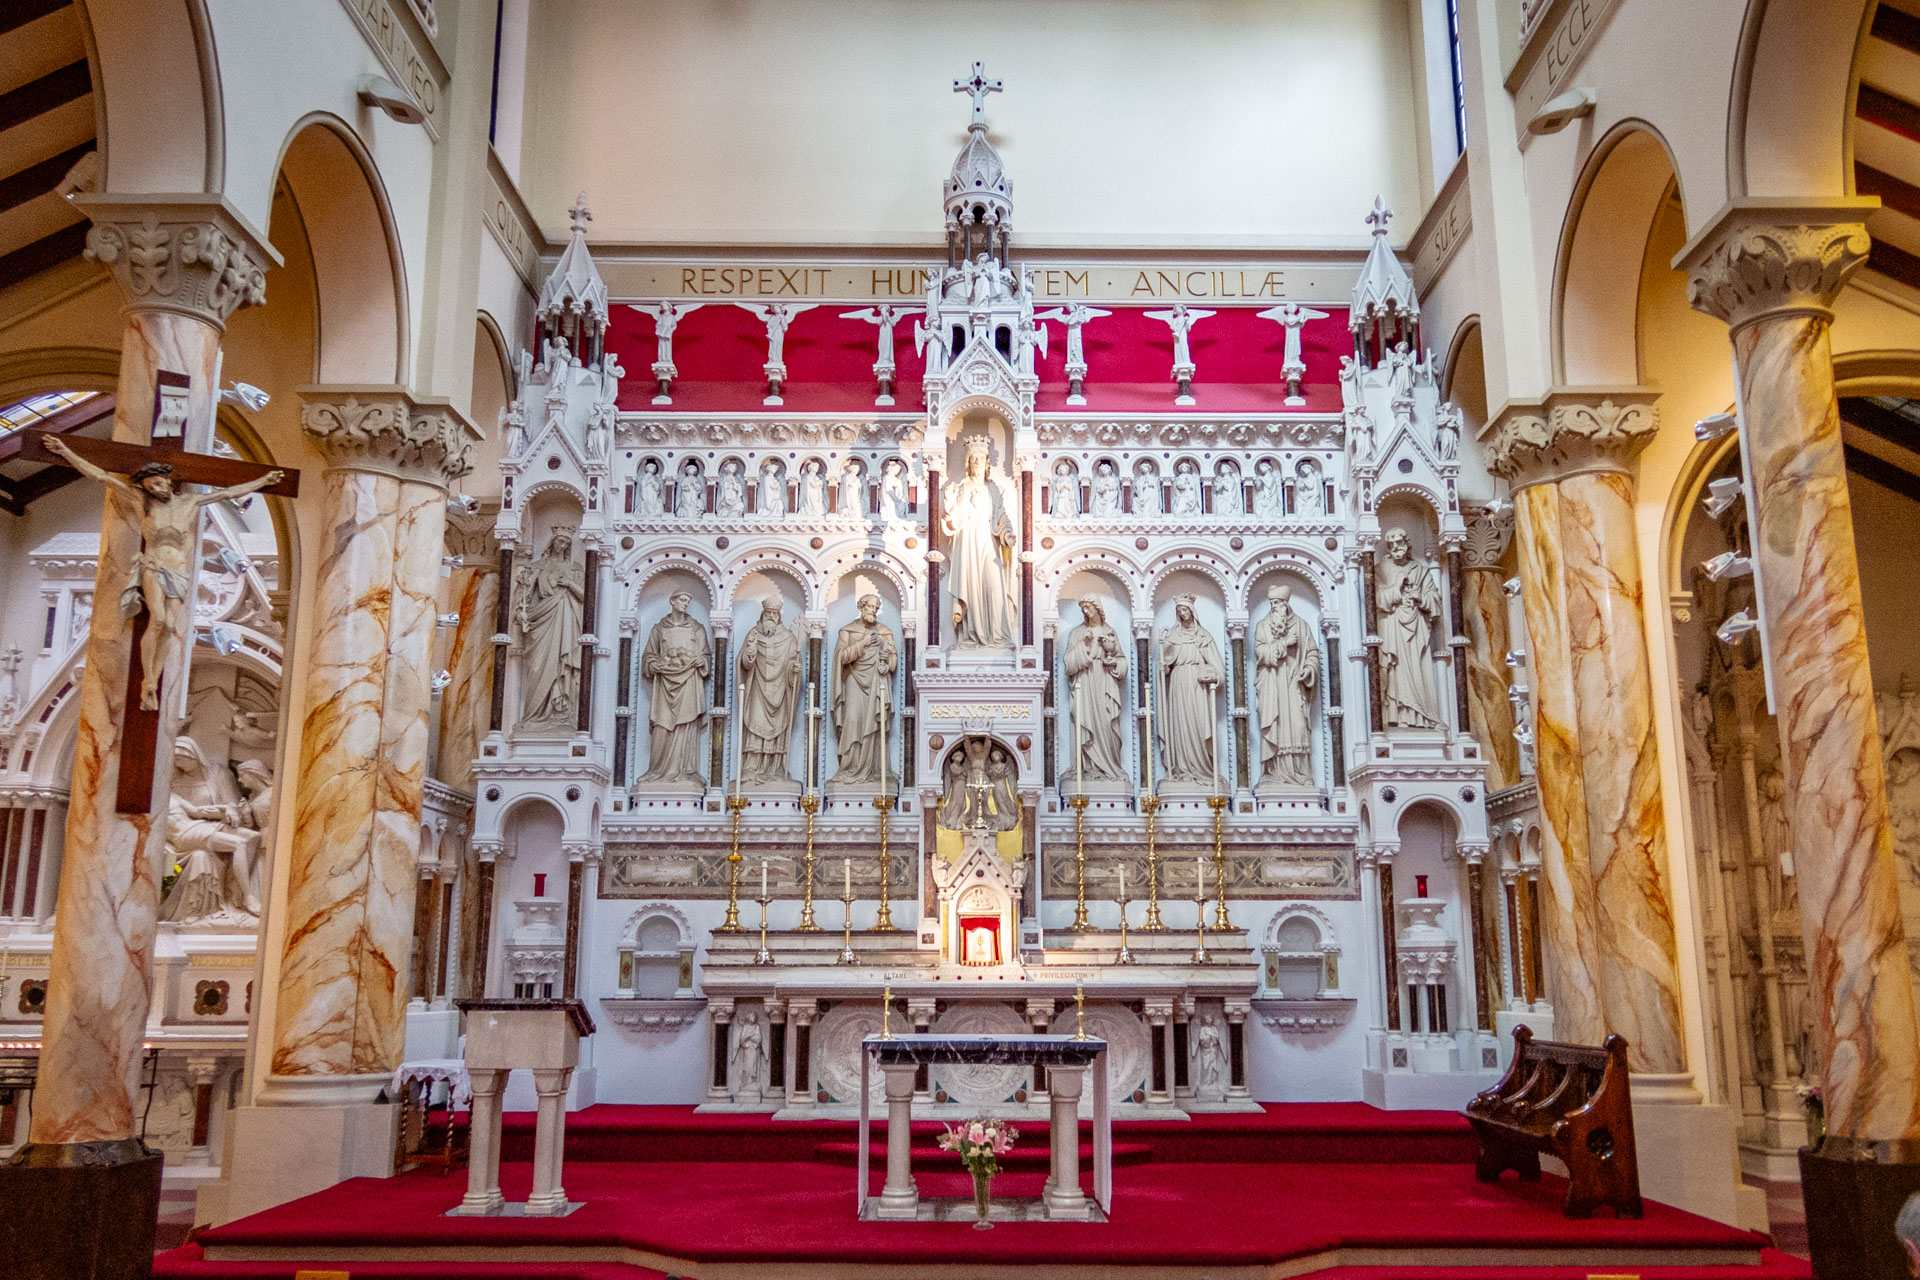 Het wit met rode altaar van de verborgen kerk St. Mary's Catholic Church in Manchester, de hidden gem